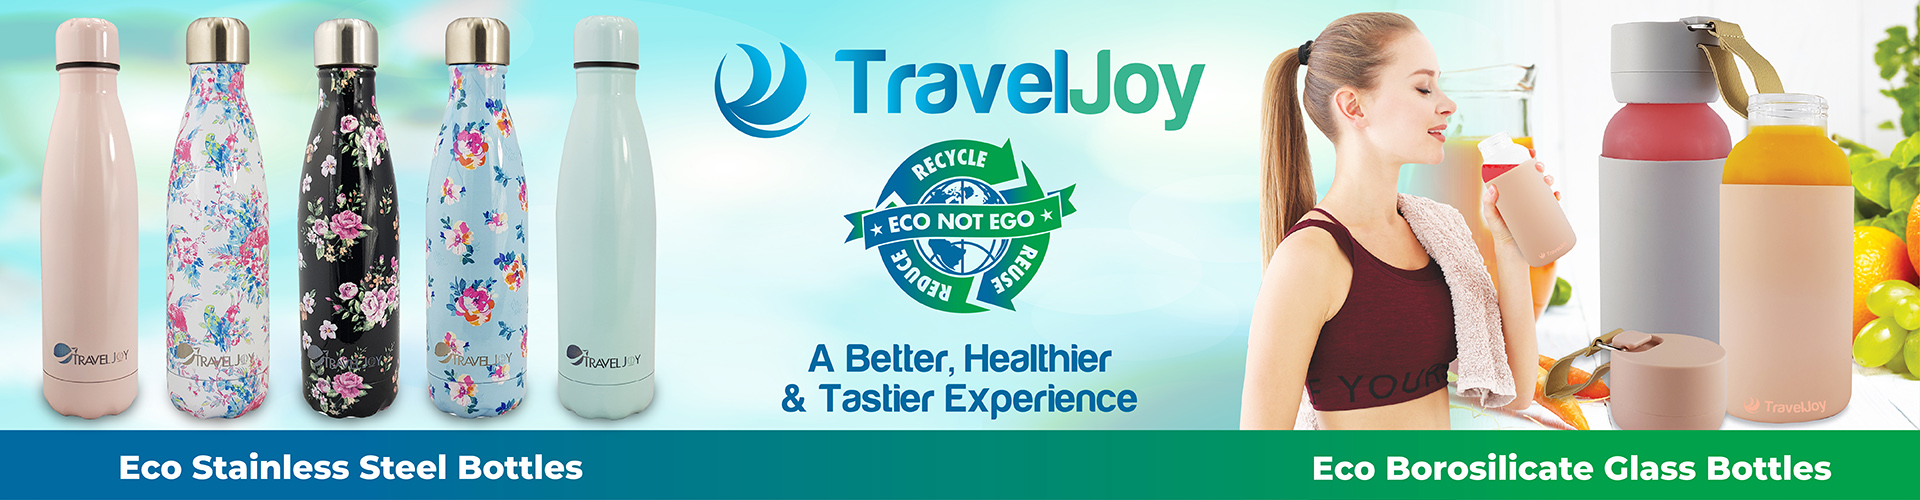 Travel Joy Eco Stainless Steel & Glass Bottles